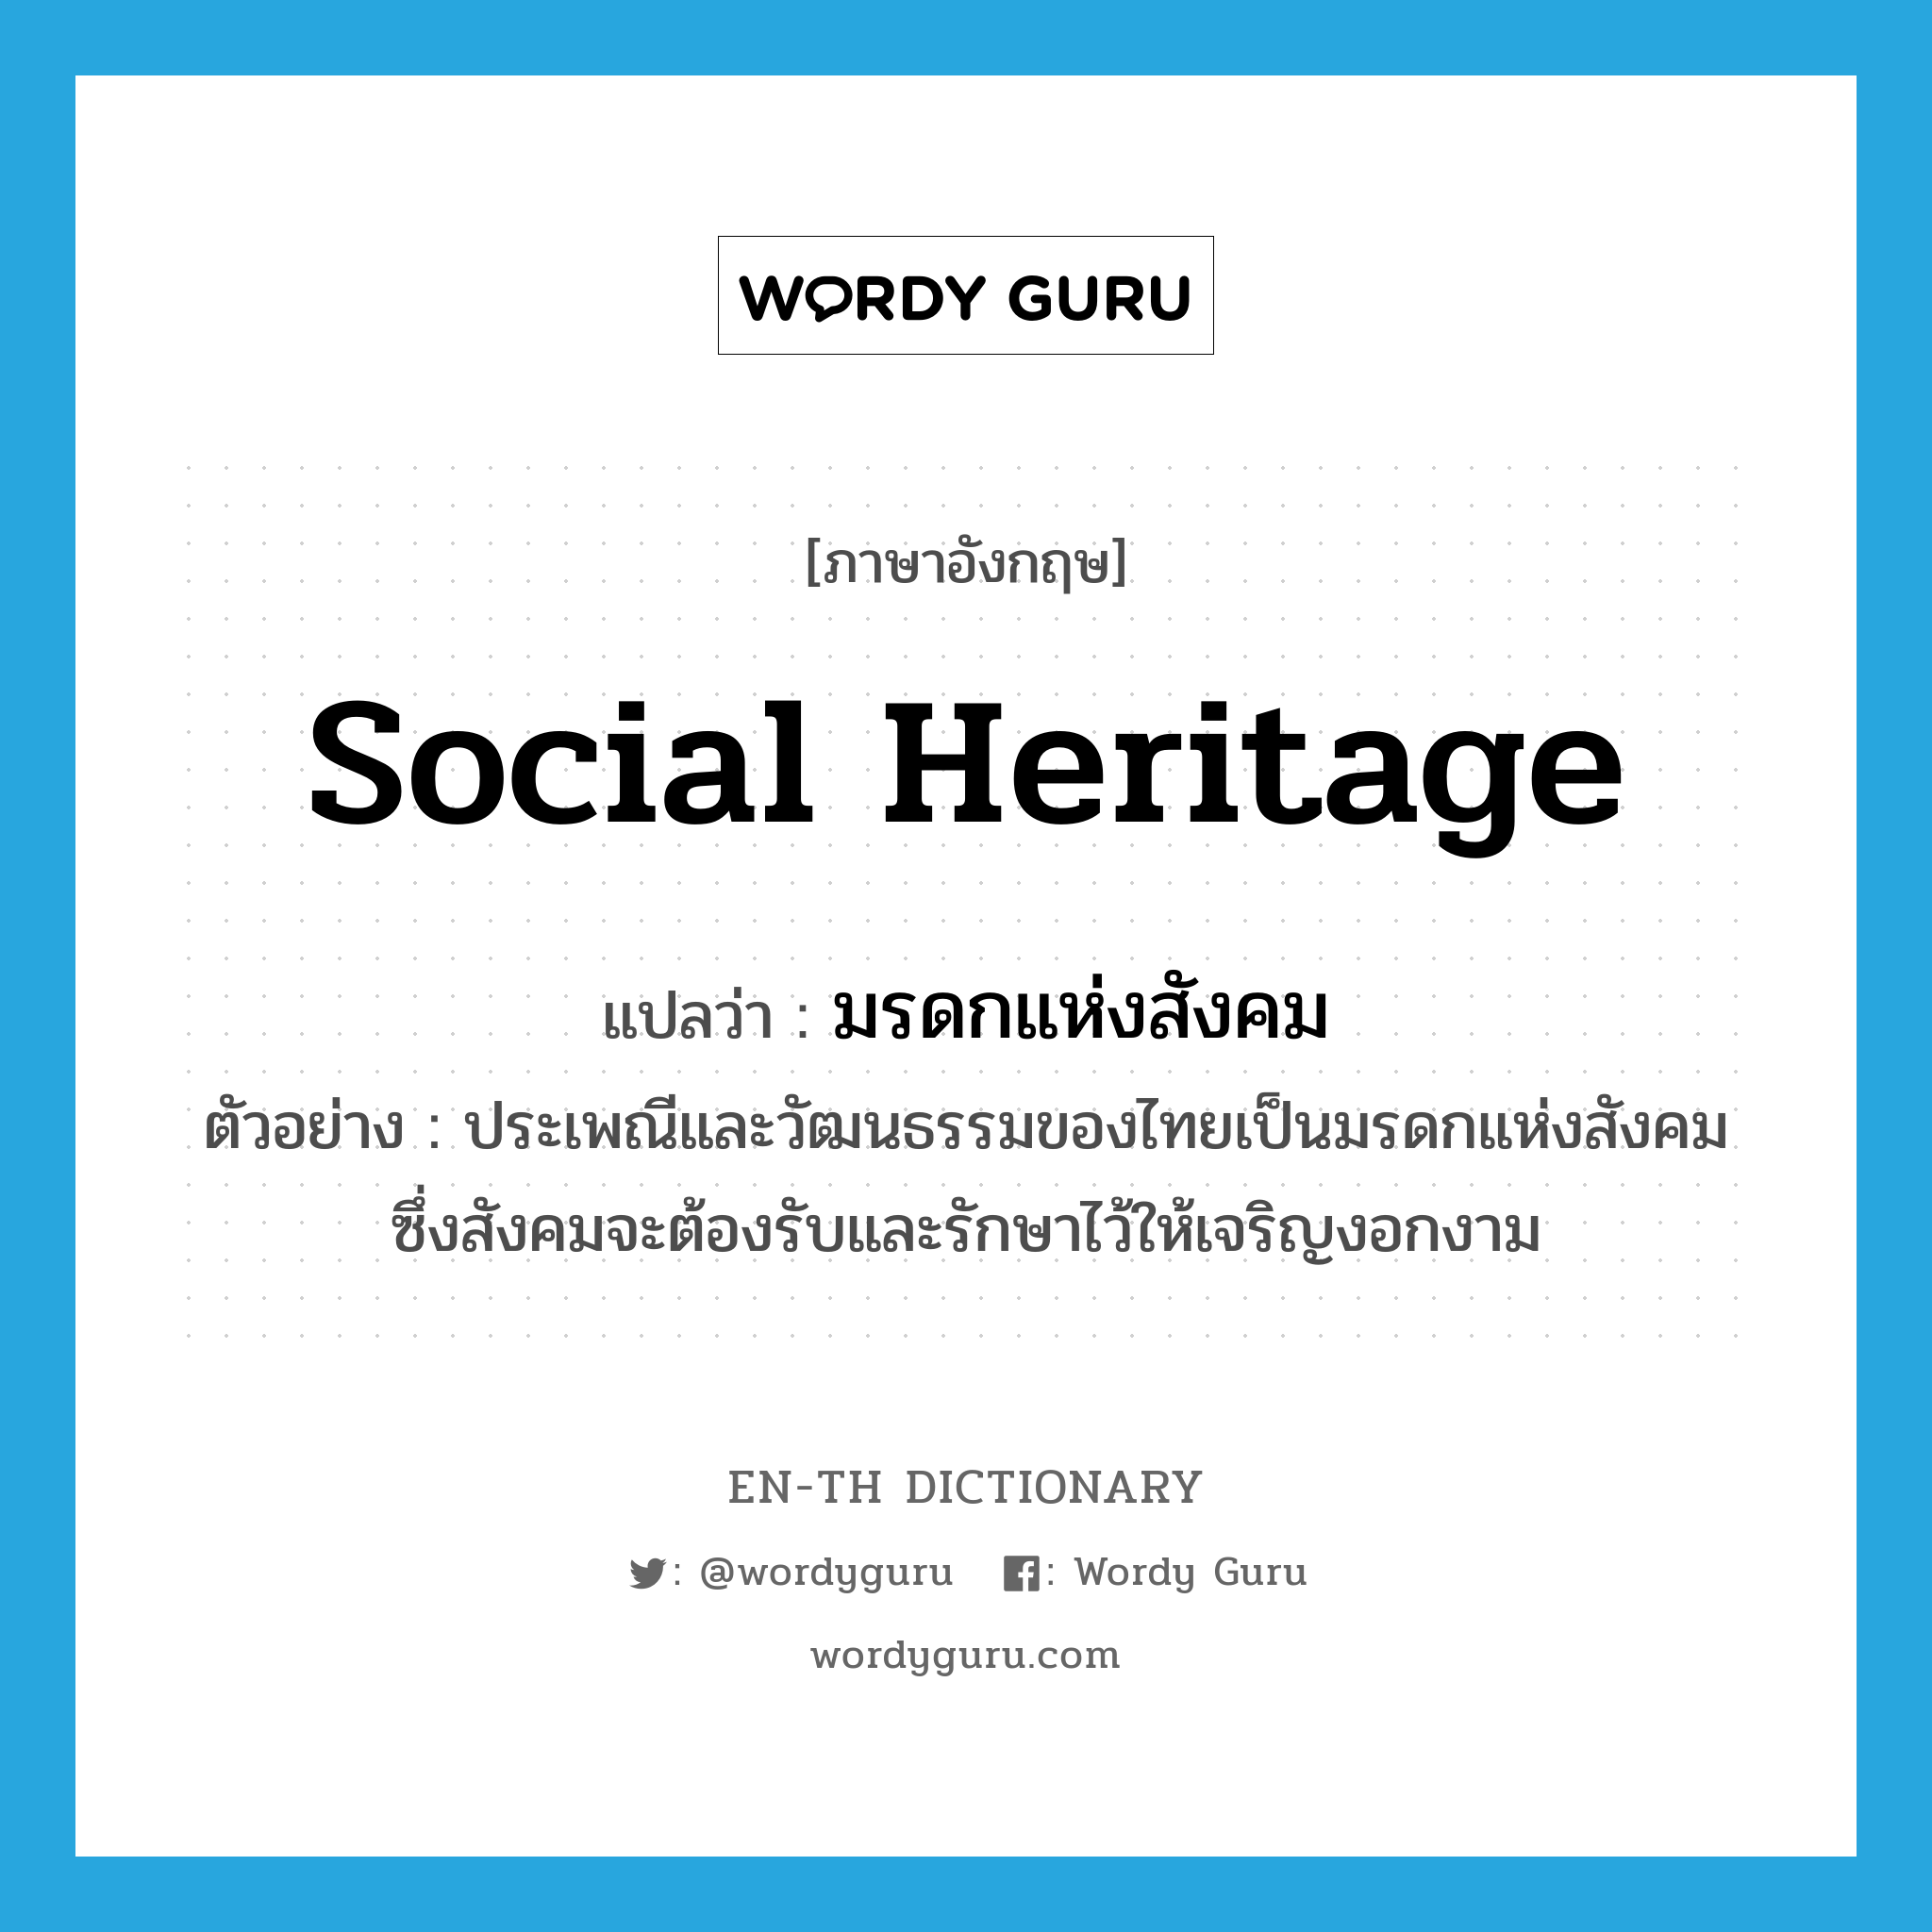 มรดกแห่งสังคม ภาษาอังกฤษ?, คำศัพท์ภาษาอังกฤษ มรดกแห่งสังคม แปลว่า social heritage ประเภท N ตัวอย่าง ประเพณีและวัฒนธรรมของไทยเป็นมรดกแห่งสังคม ซึ่งสังคมจะต้องรับและรักษาไว้ให้เจริญงอกงาม หมวด N